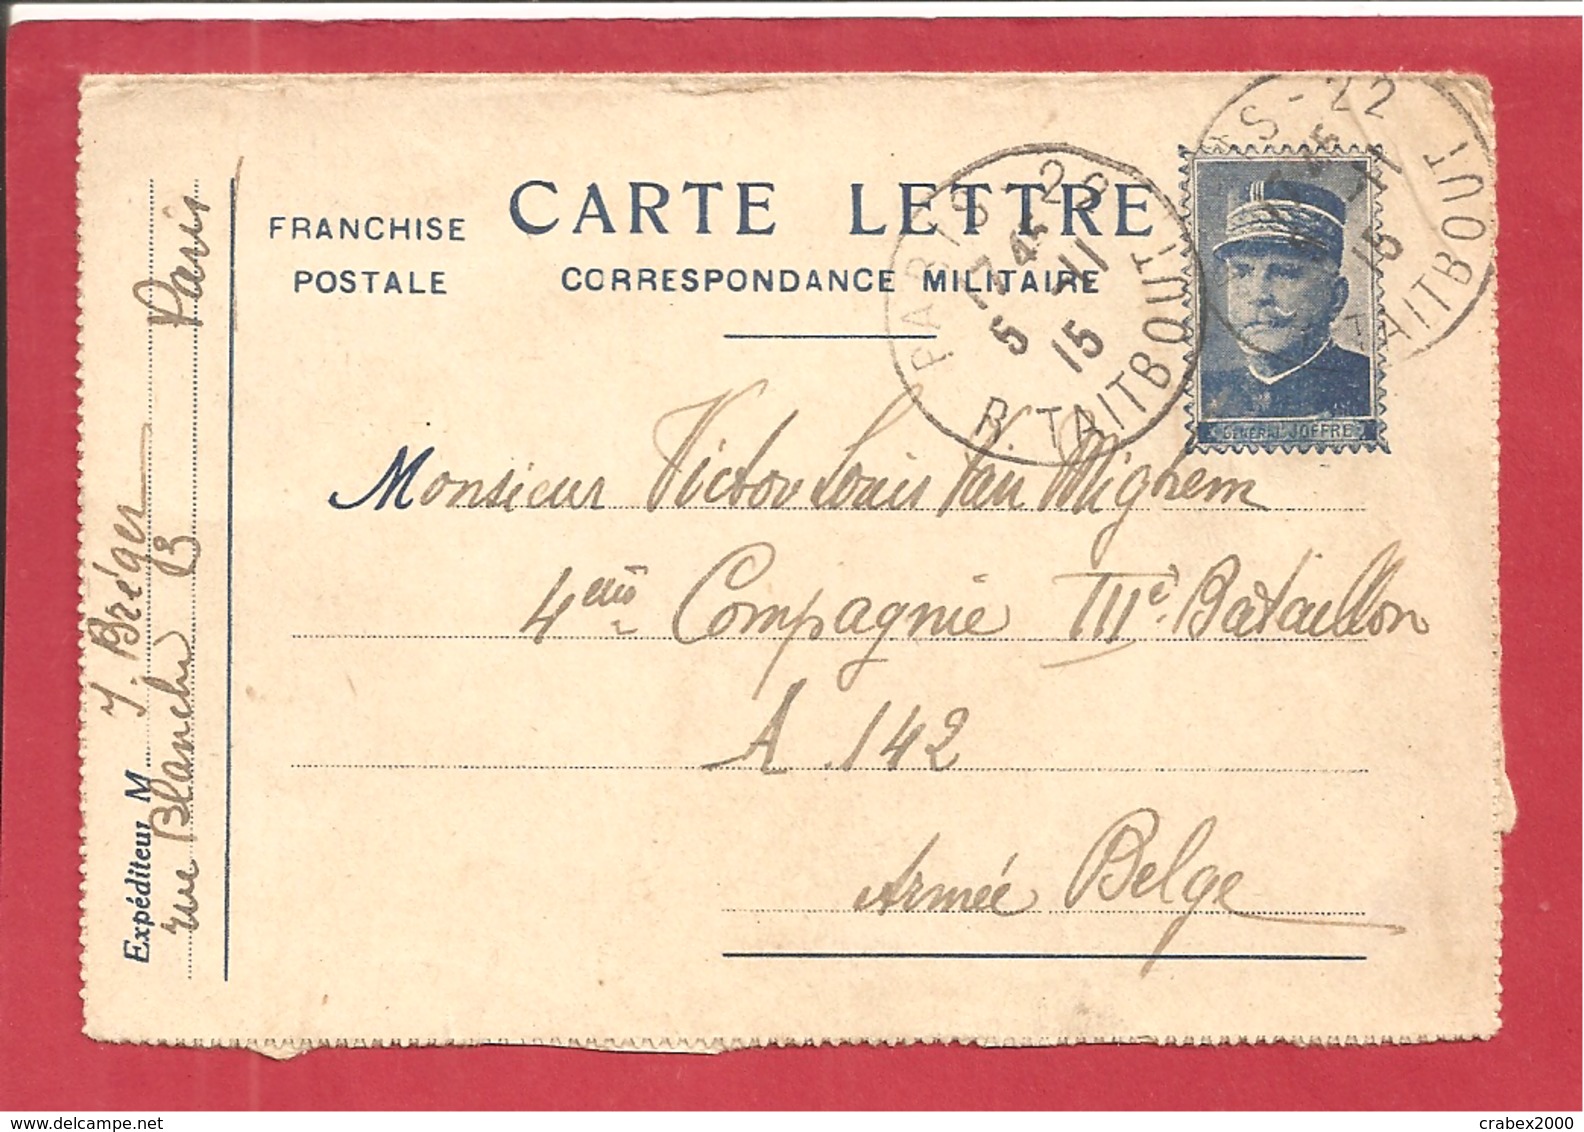 Y&T N°FM CARTE LETTRE PARIS Vers A142 ARMEE BELGE 1915 3 SCANS - Armée Belge